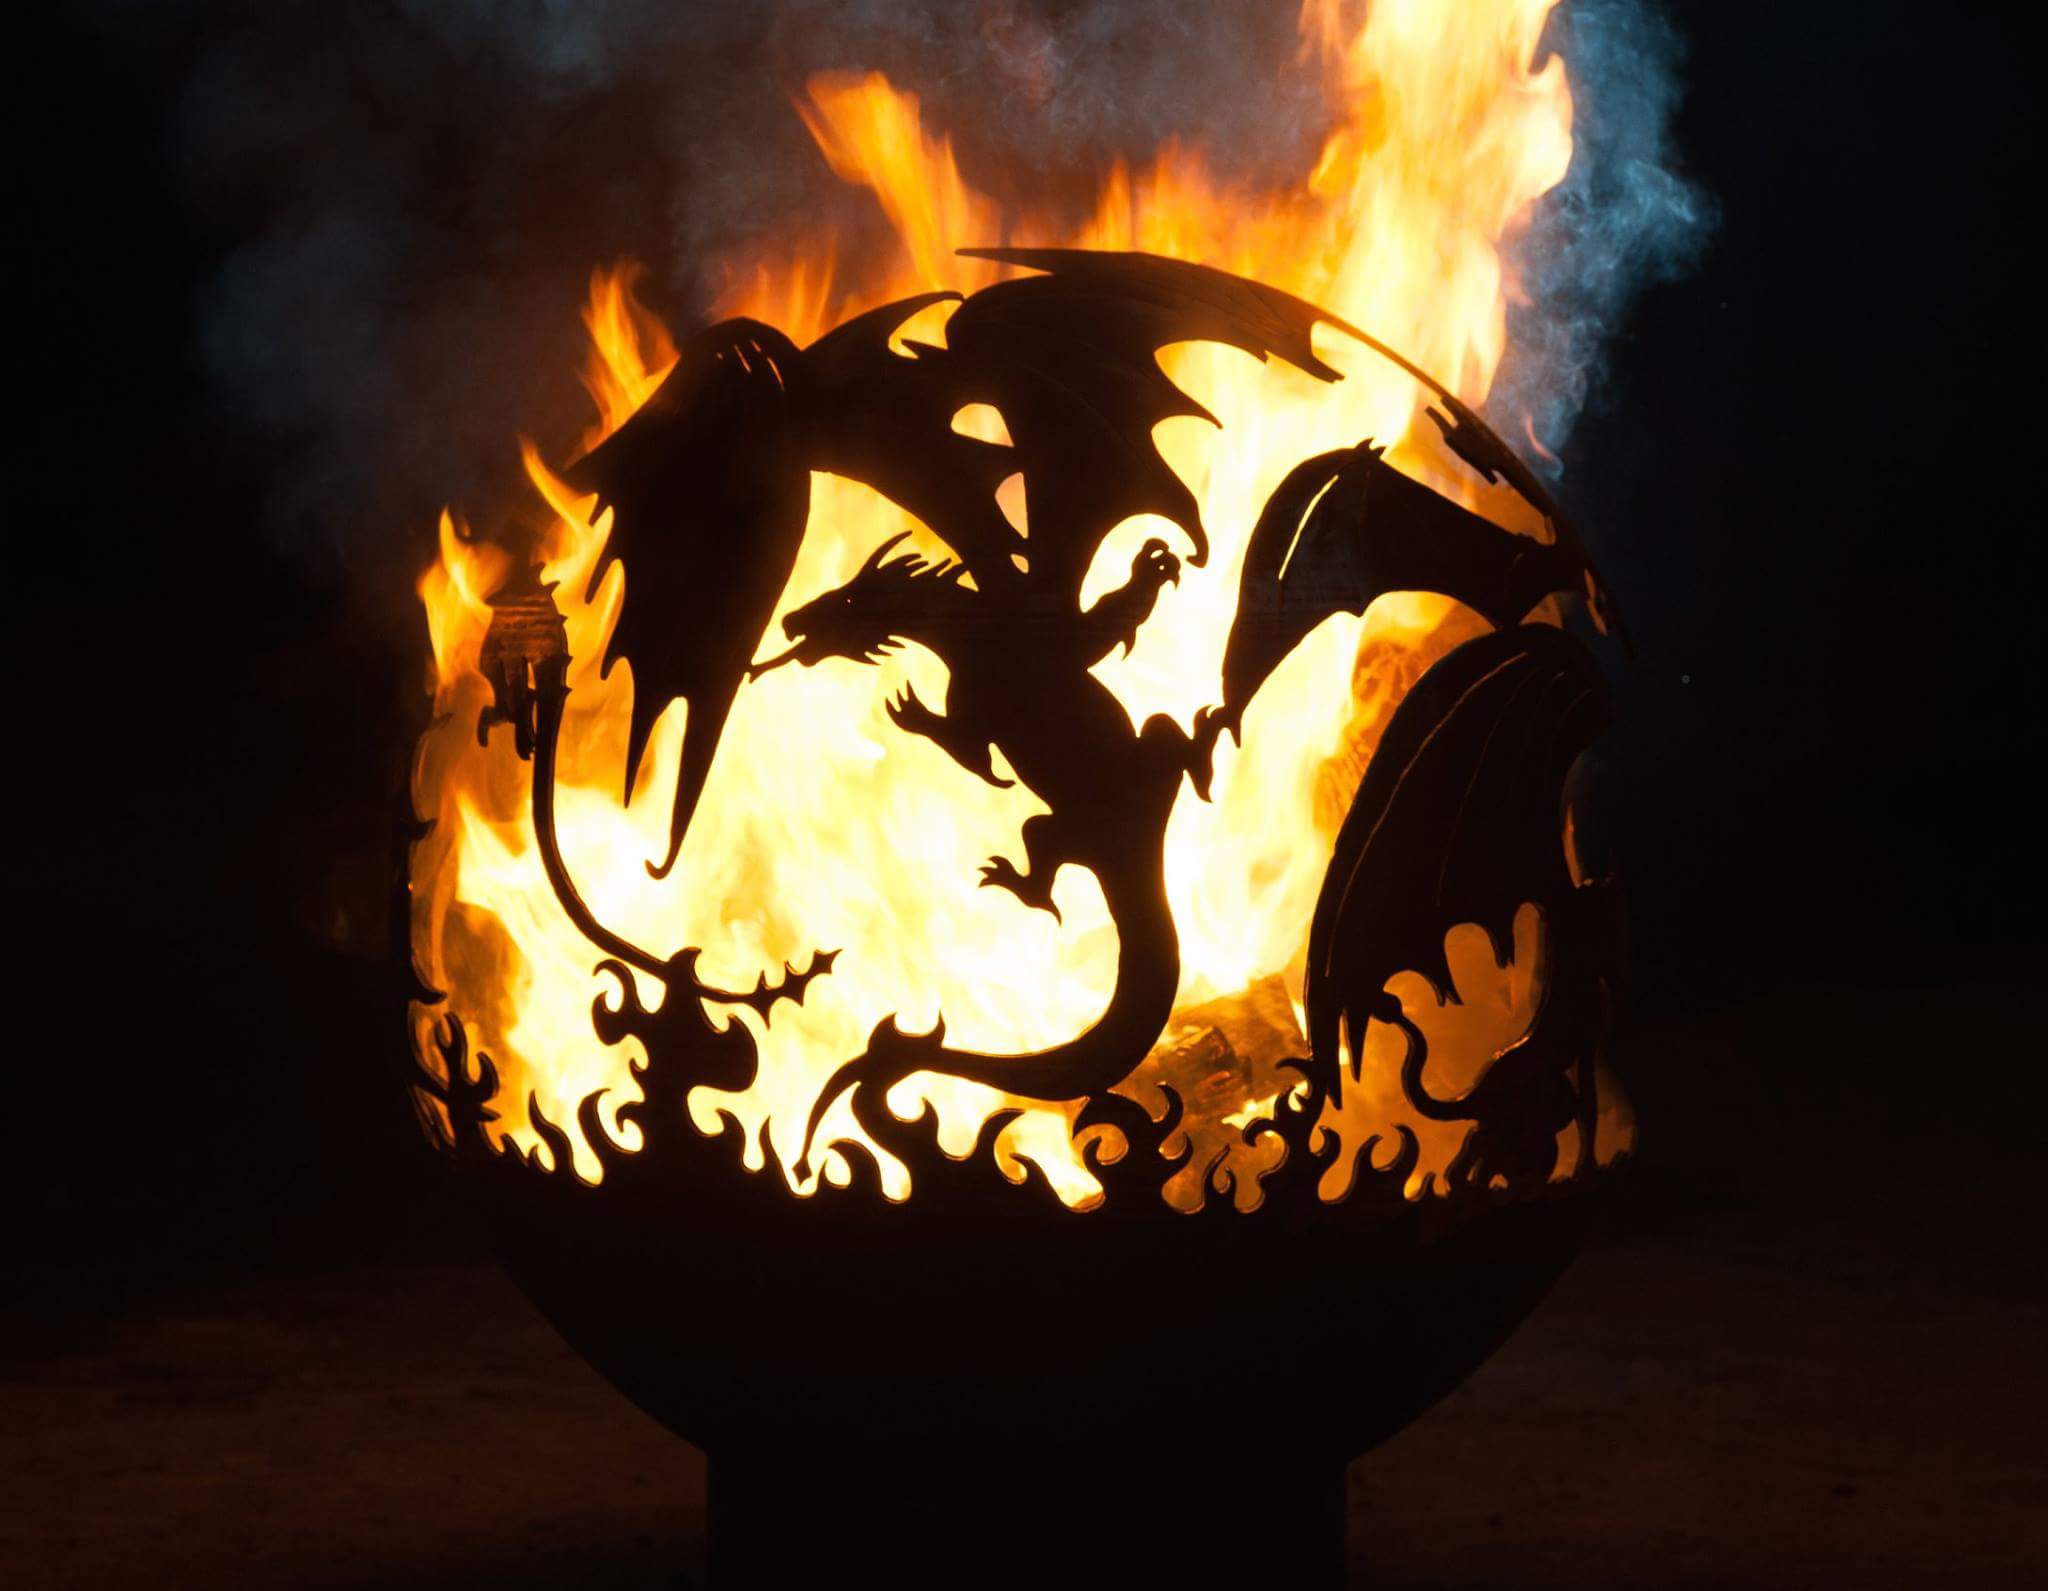 Очаг - Fire Pit "Dragon"